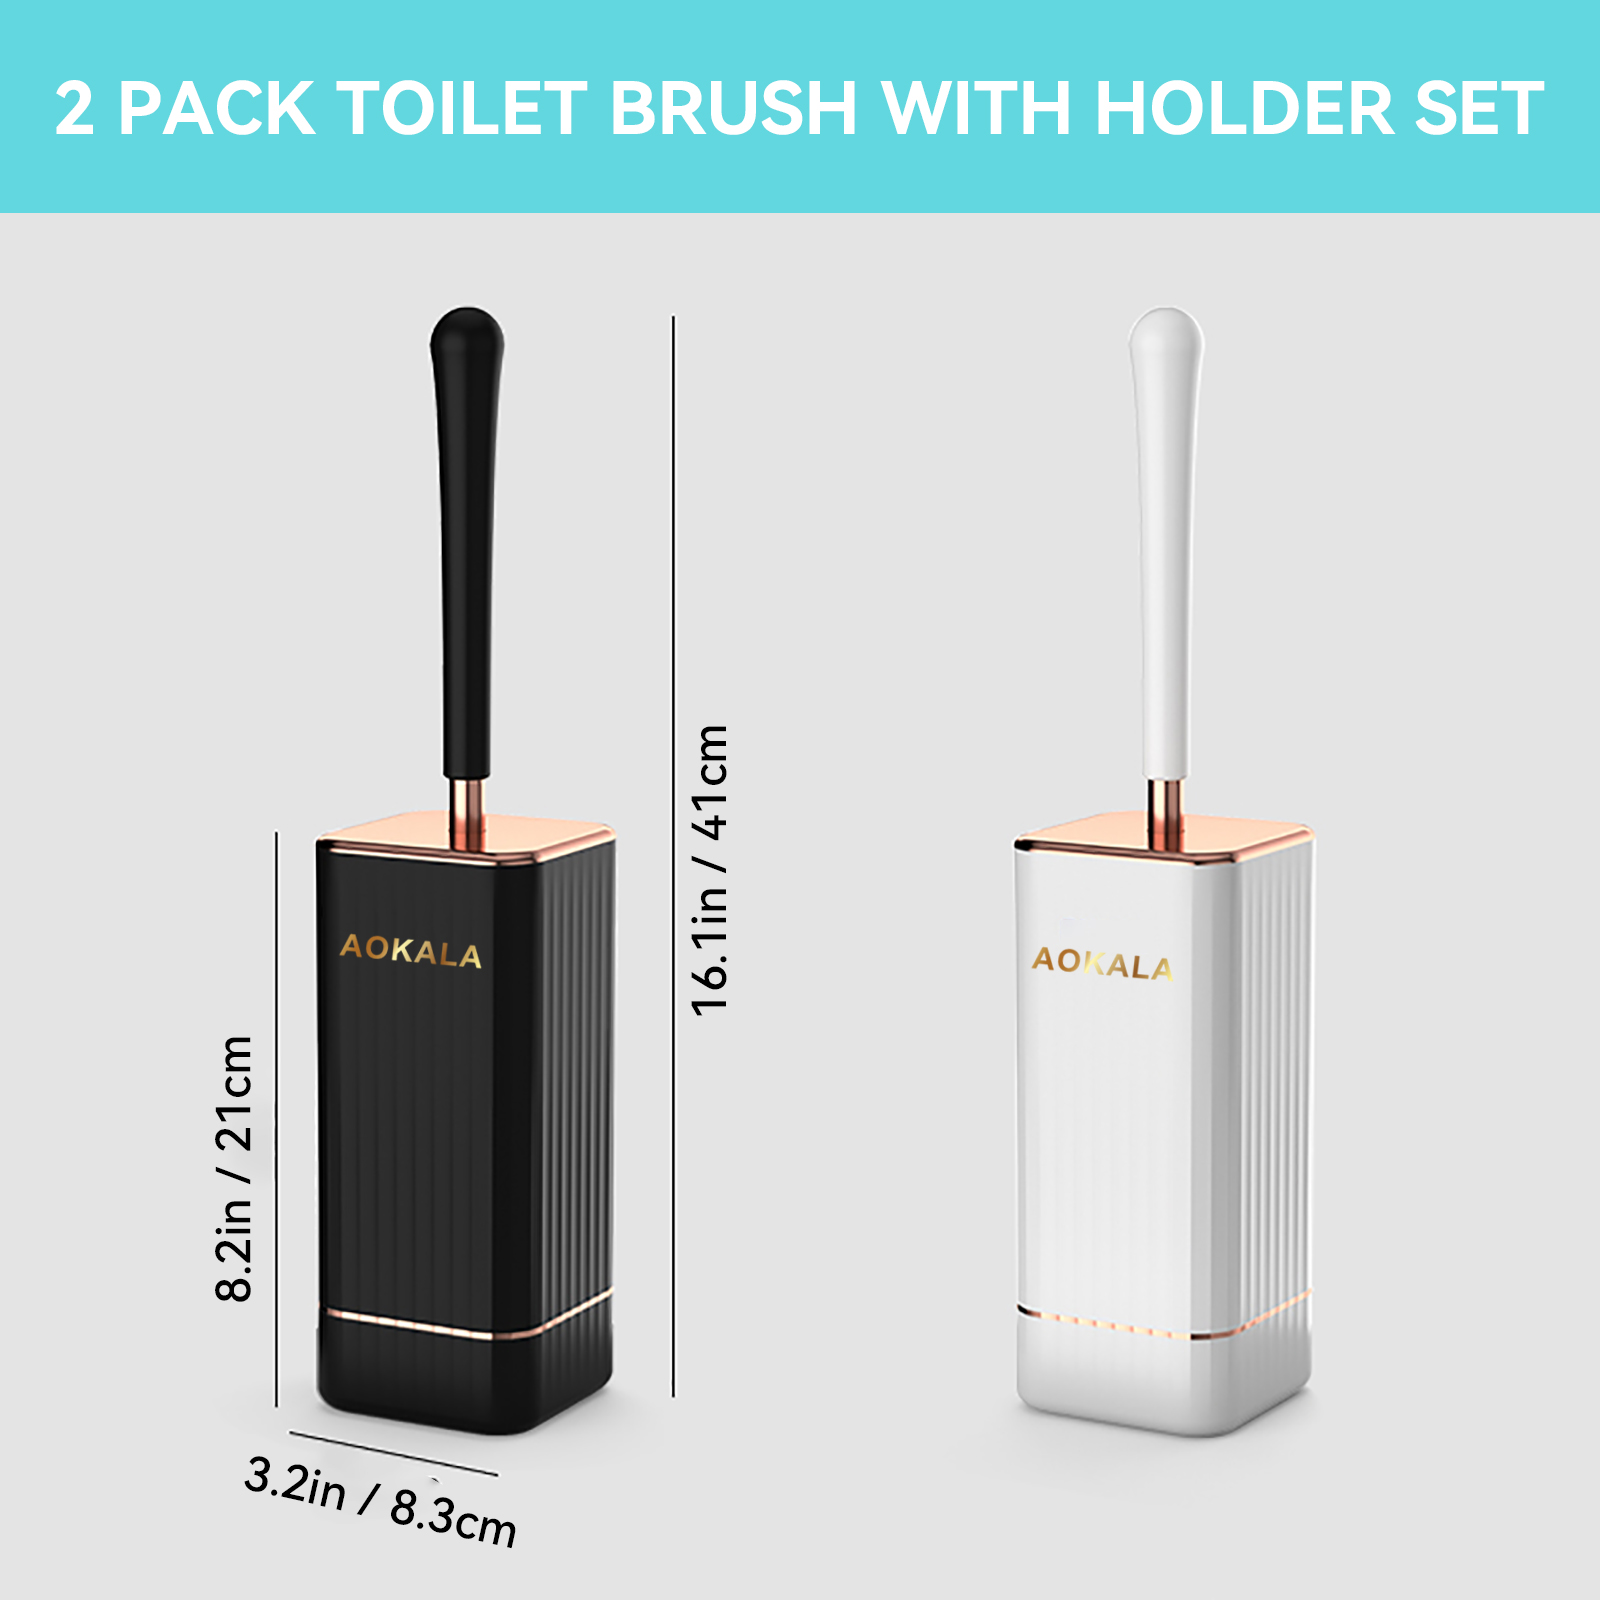 Modern Toilet Bowl Brush Holder Set with 2 Pack